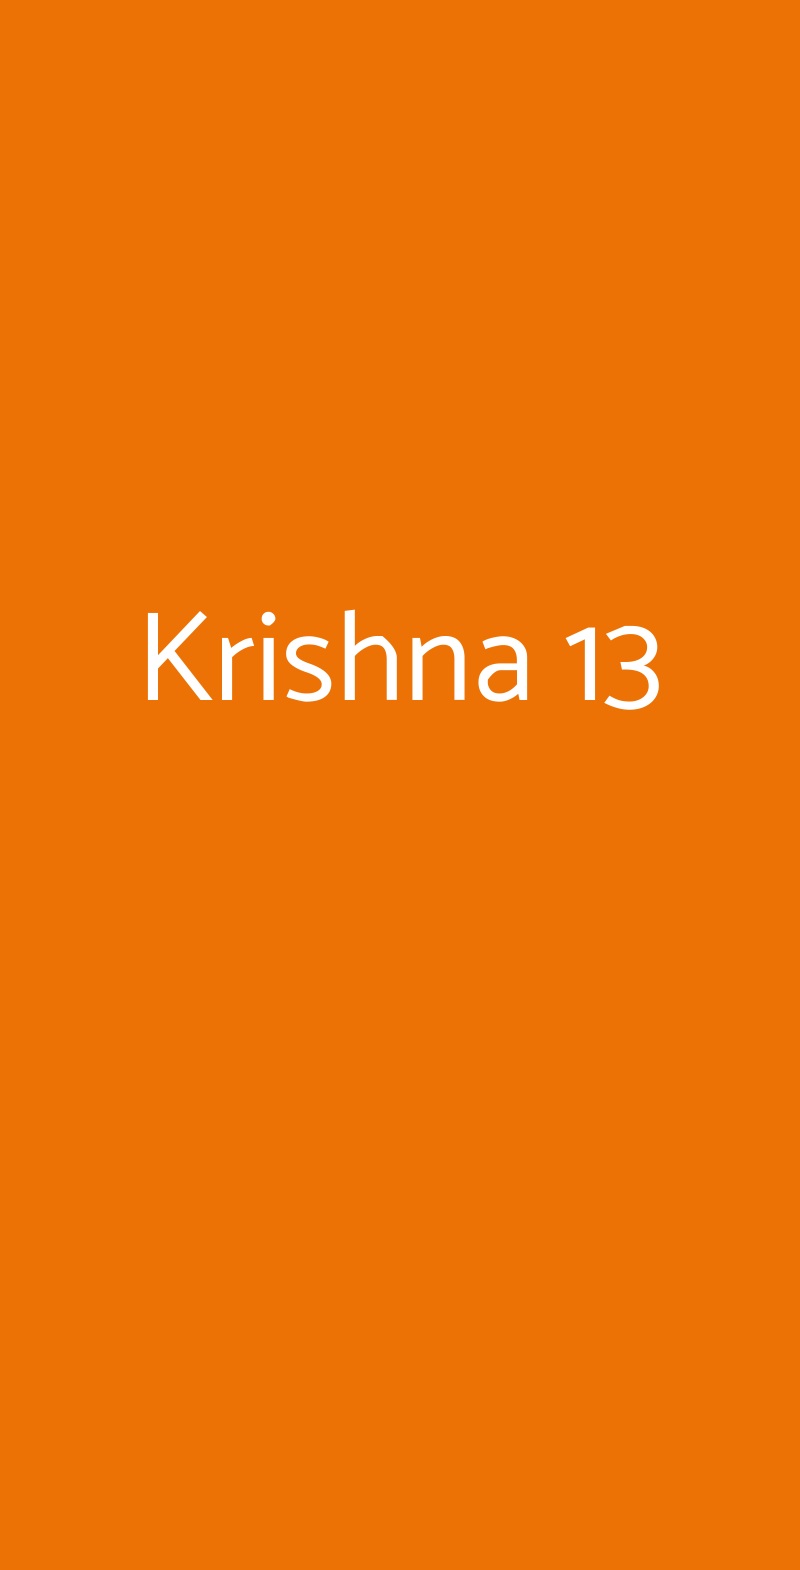 Krishna 13 Roma menù 1 pagina